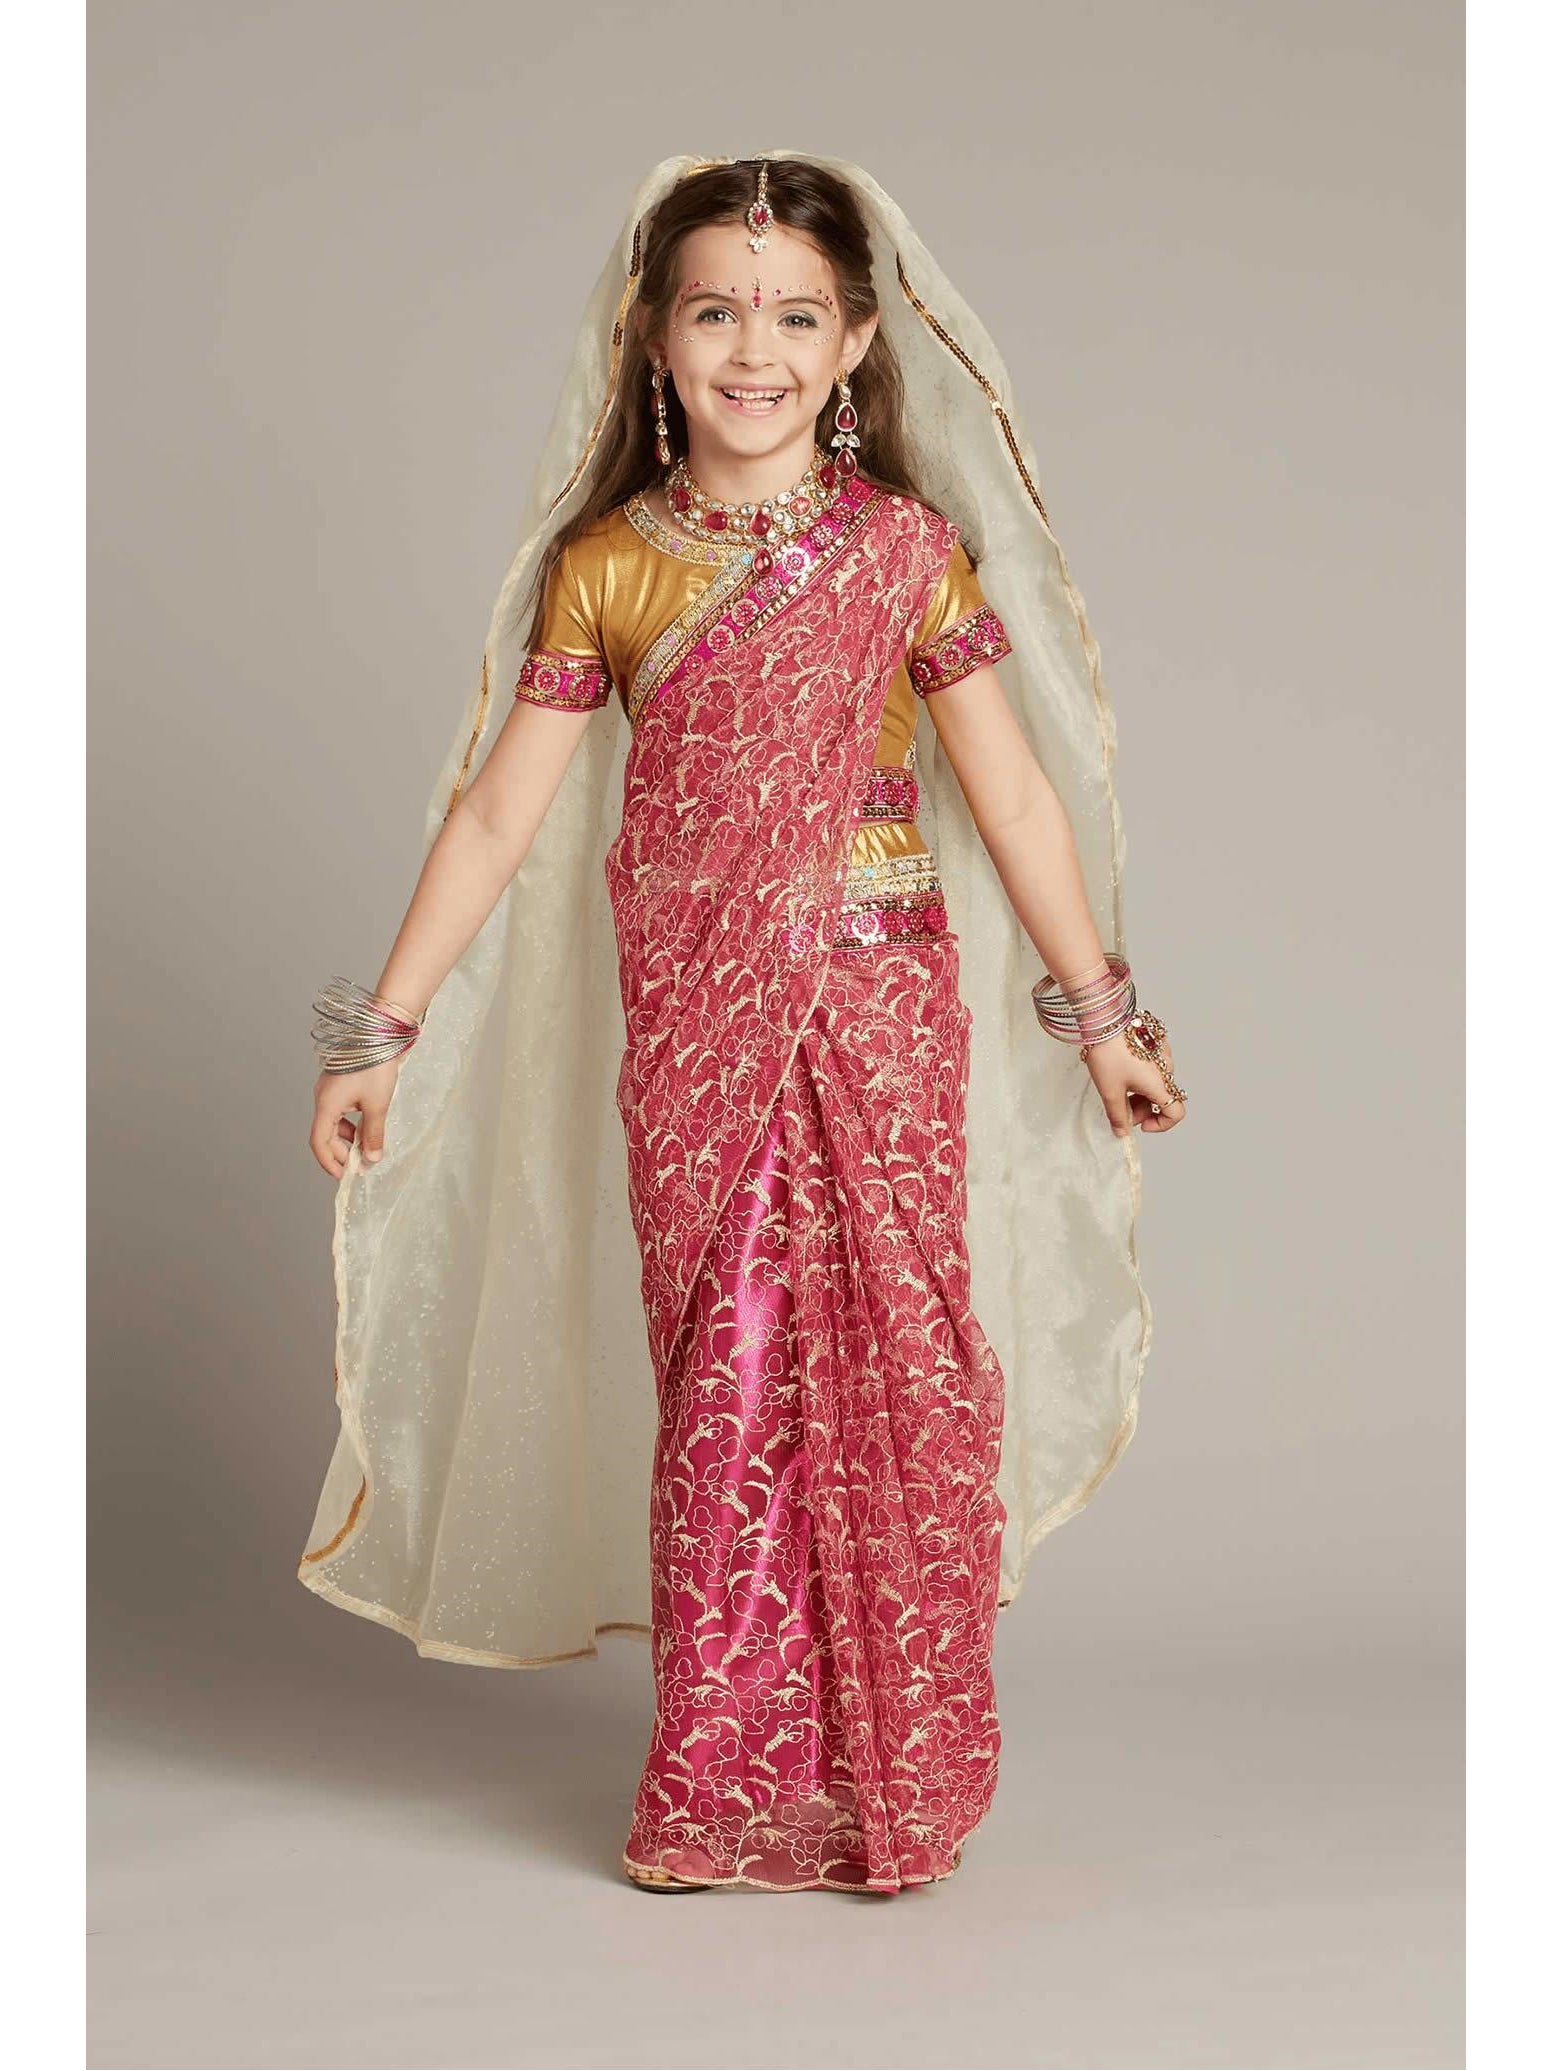 indian princess costume